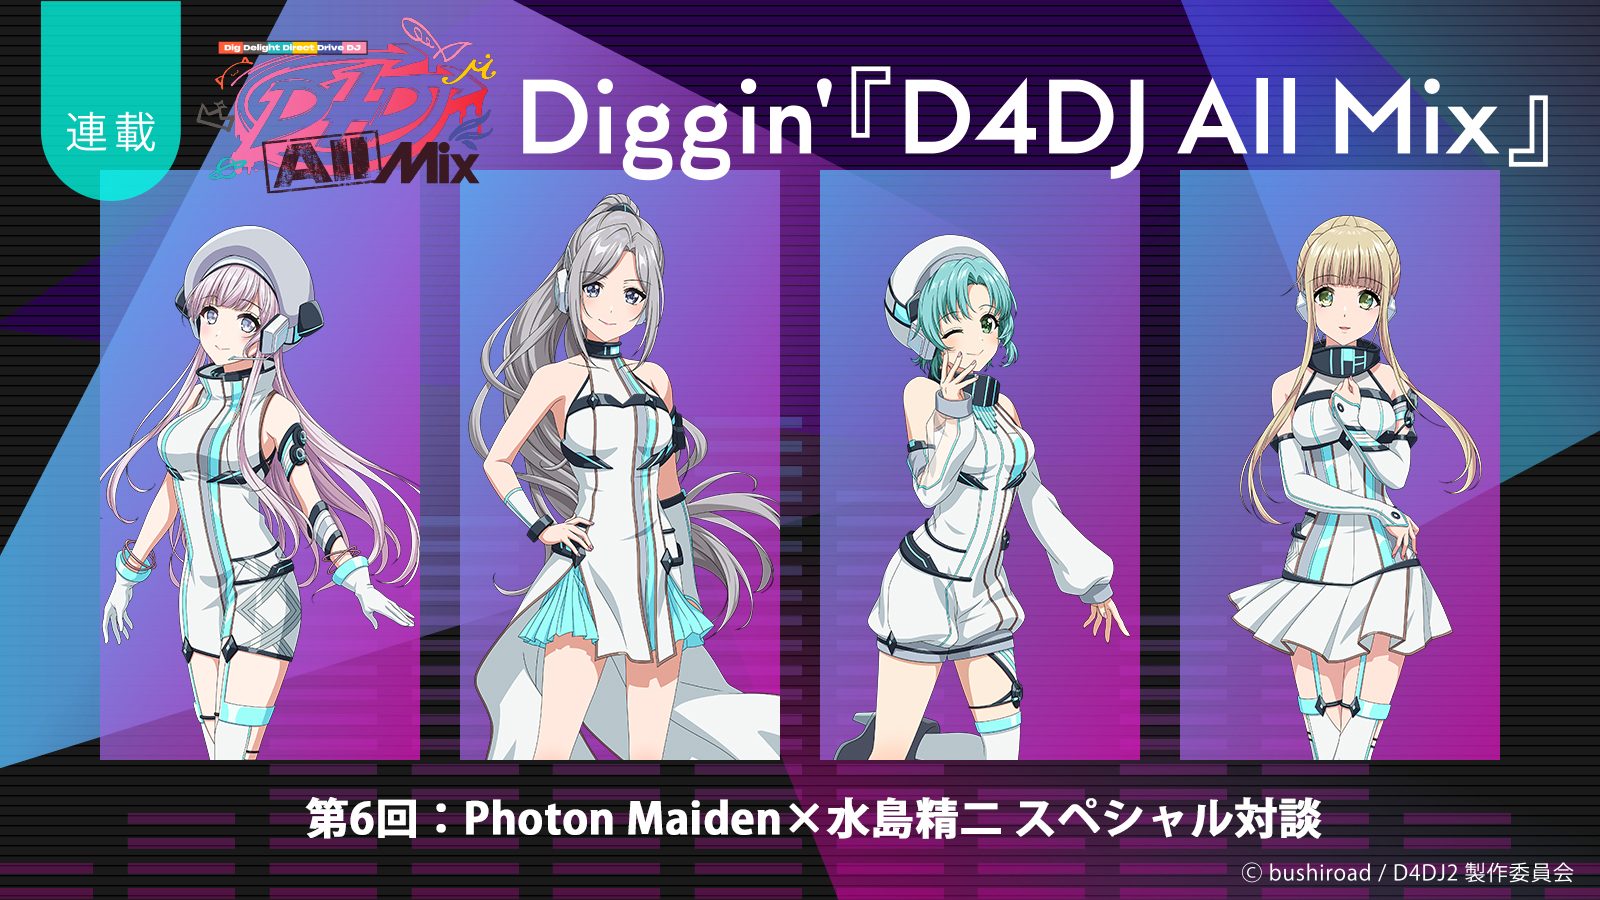 【連載】Diggin’『D4DJ All Mix』第6回：究極の“かわいい”自己紹介ソングが爆誕！――Photon Maiden×水島精二総監督スペシャル対談